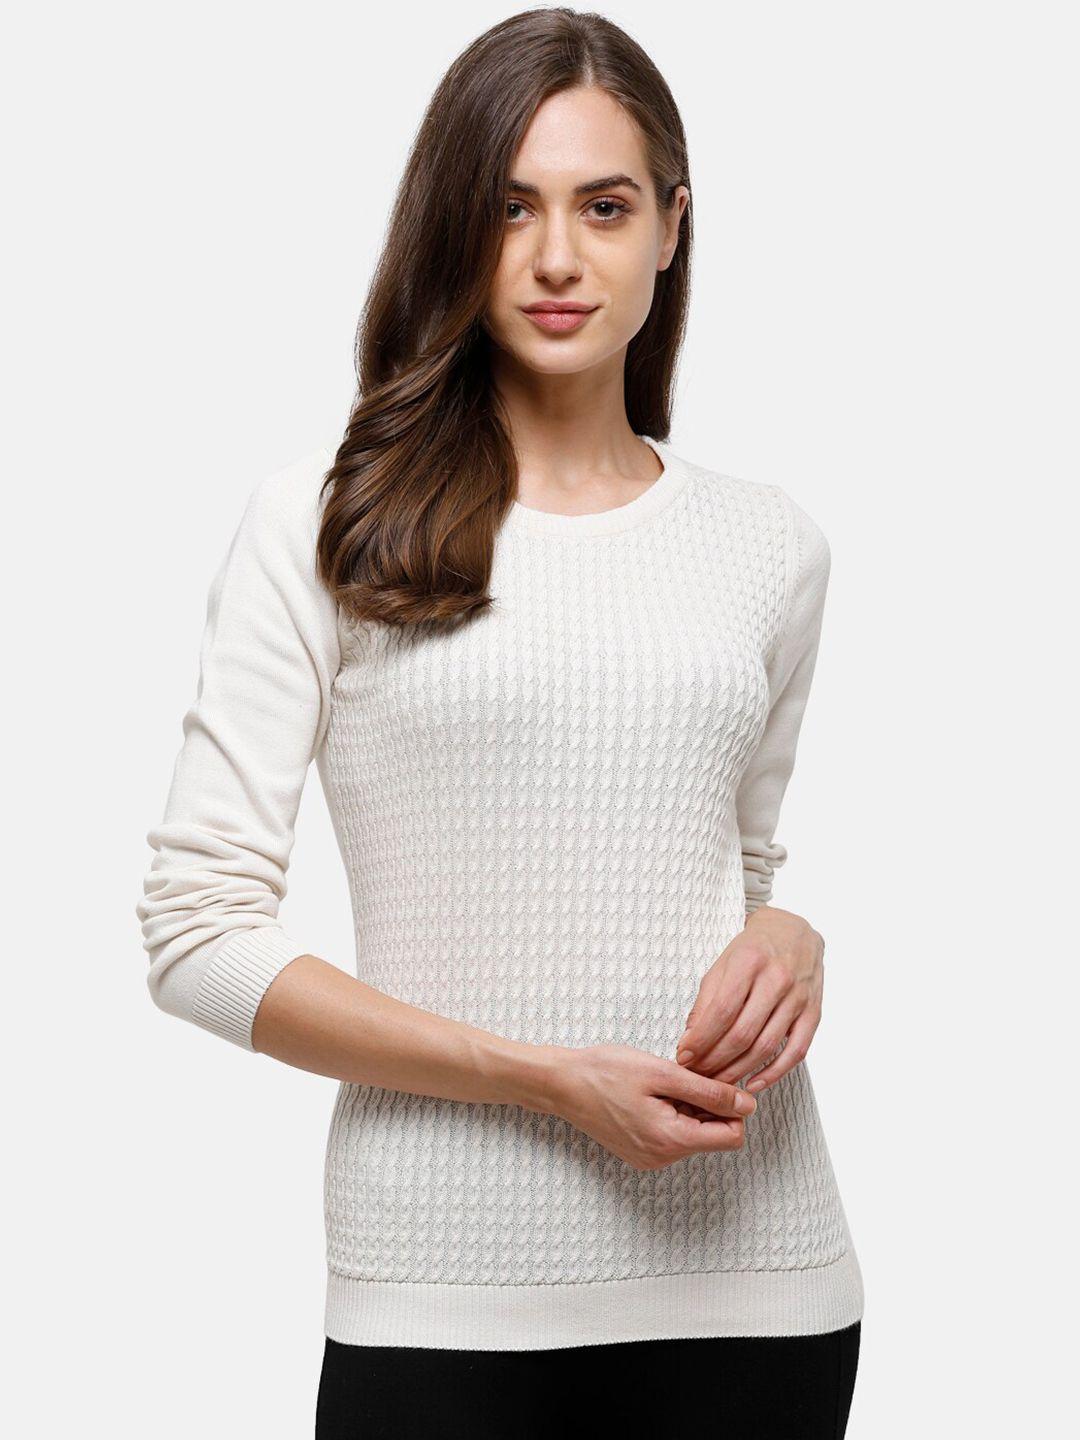 98 degree north women off white self designed pure cotton pullover sweater